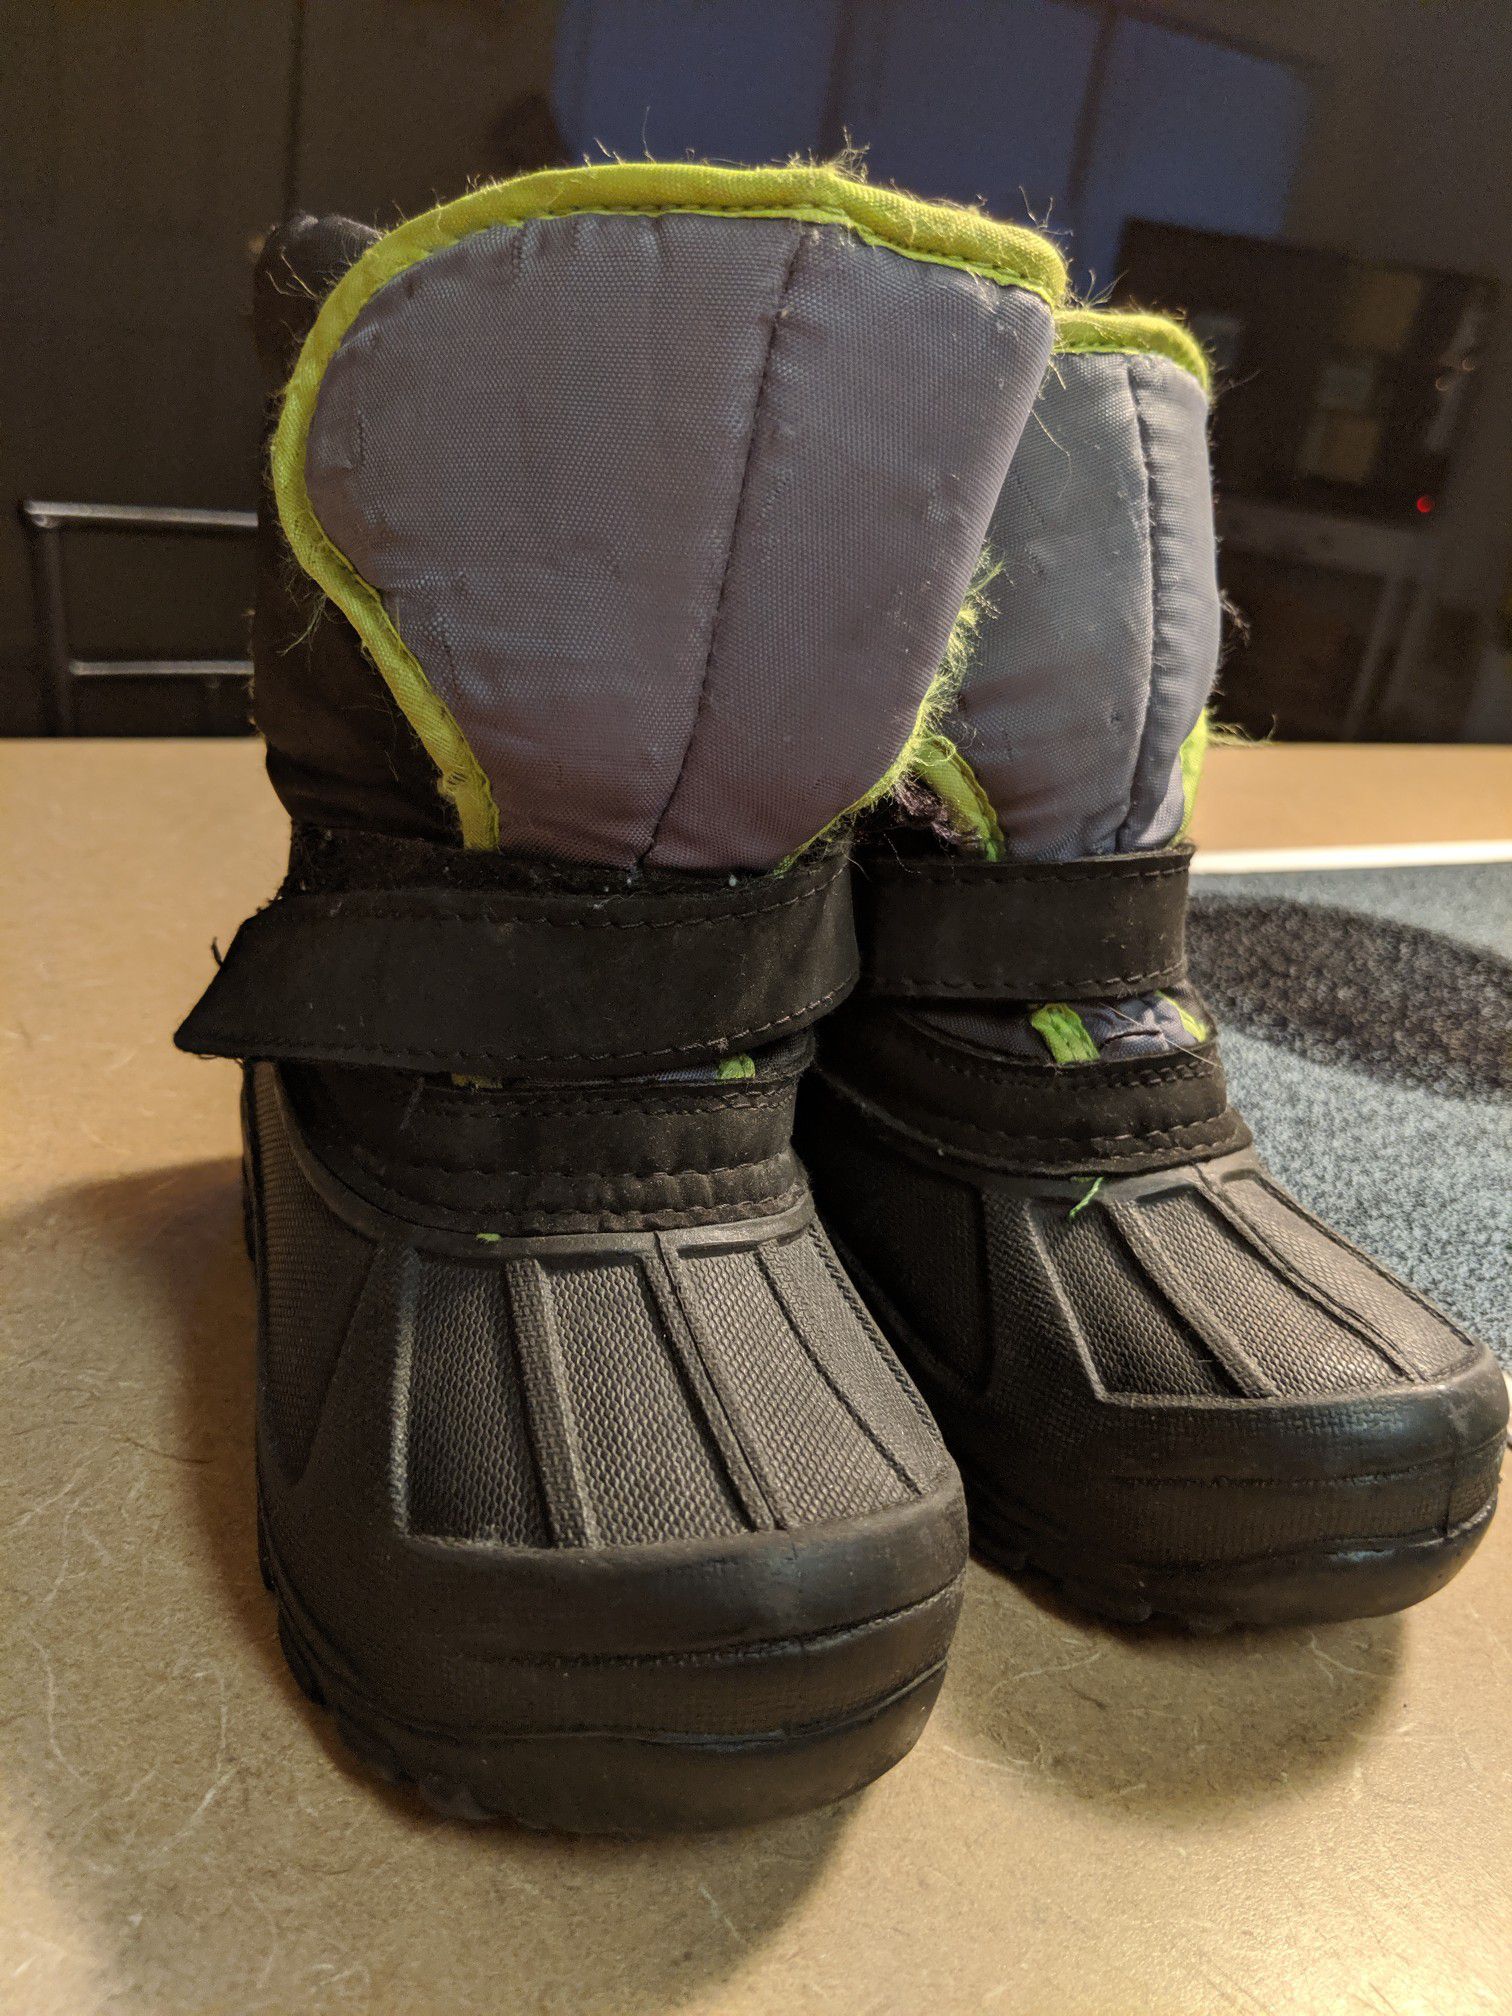 Sz 9 kids snow boots